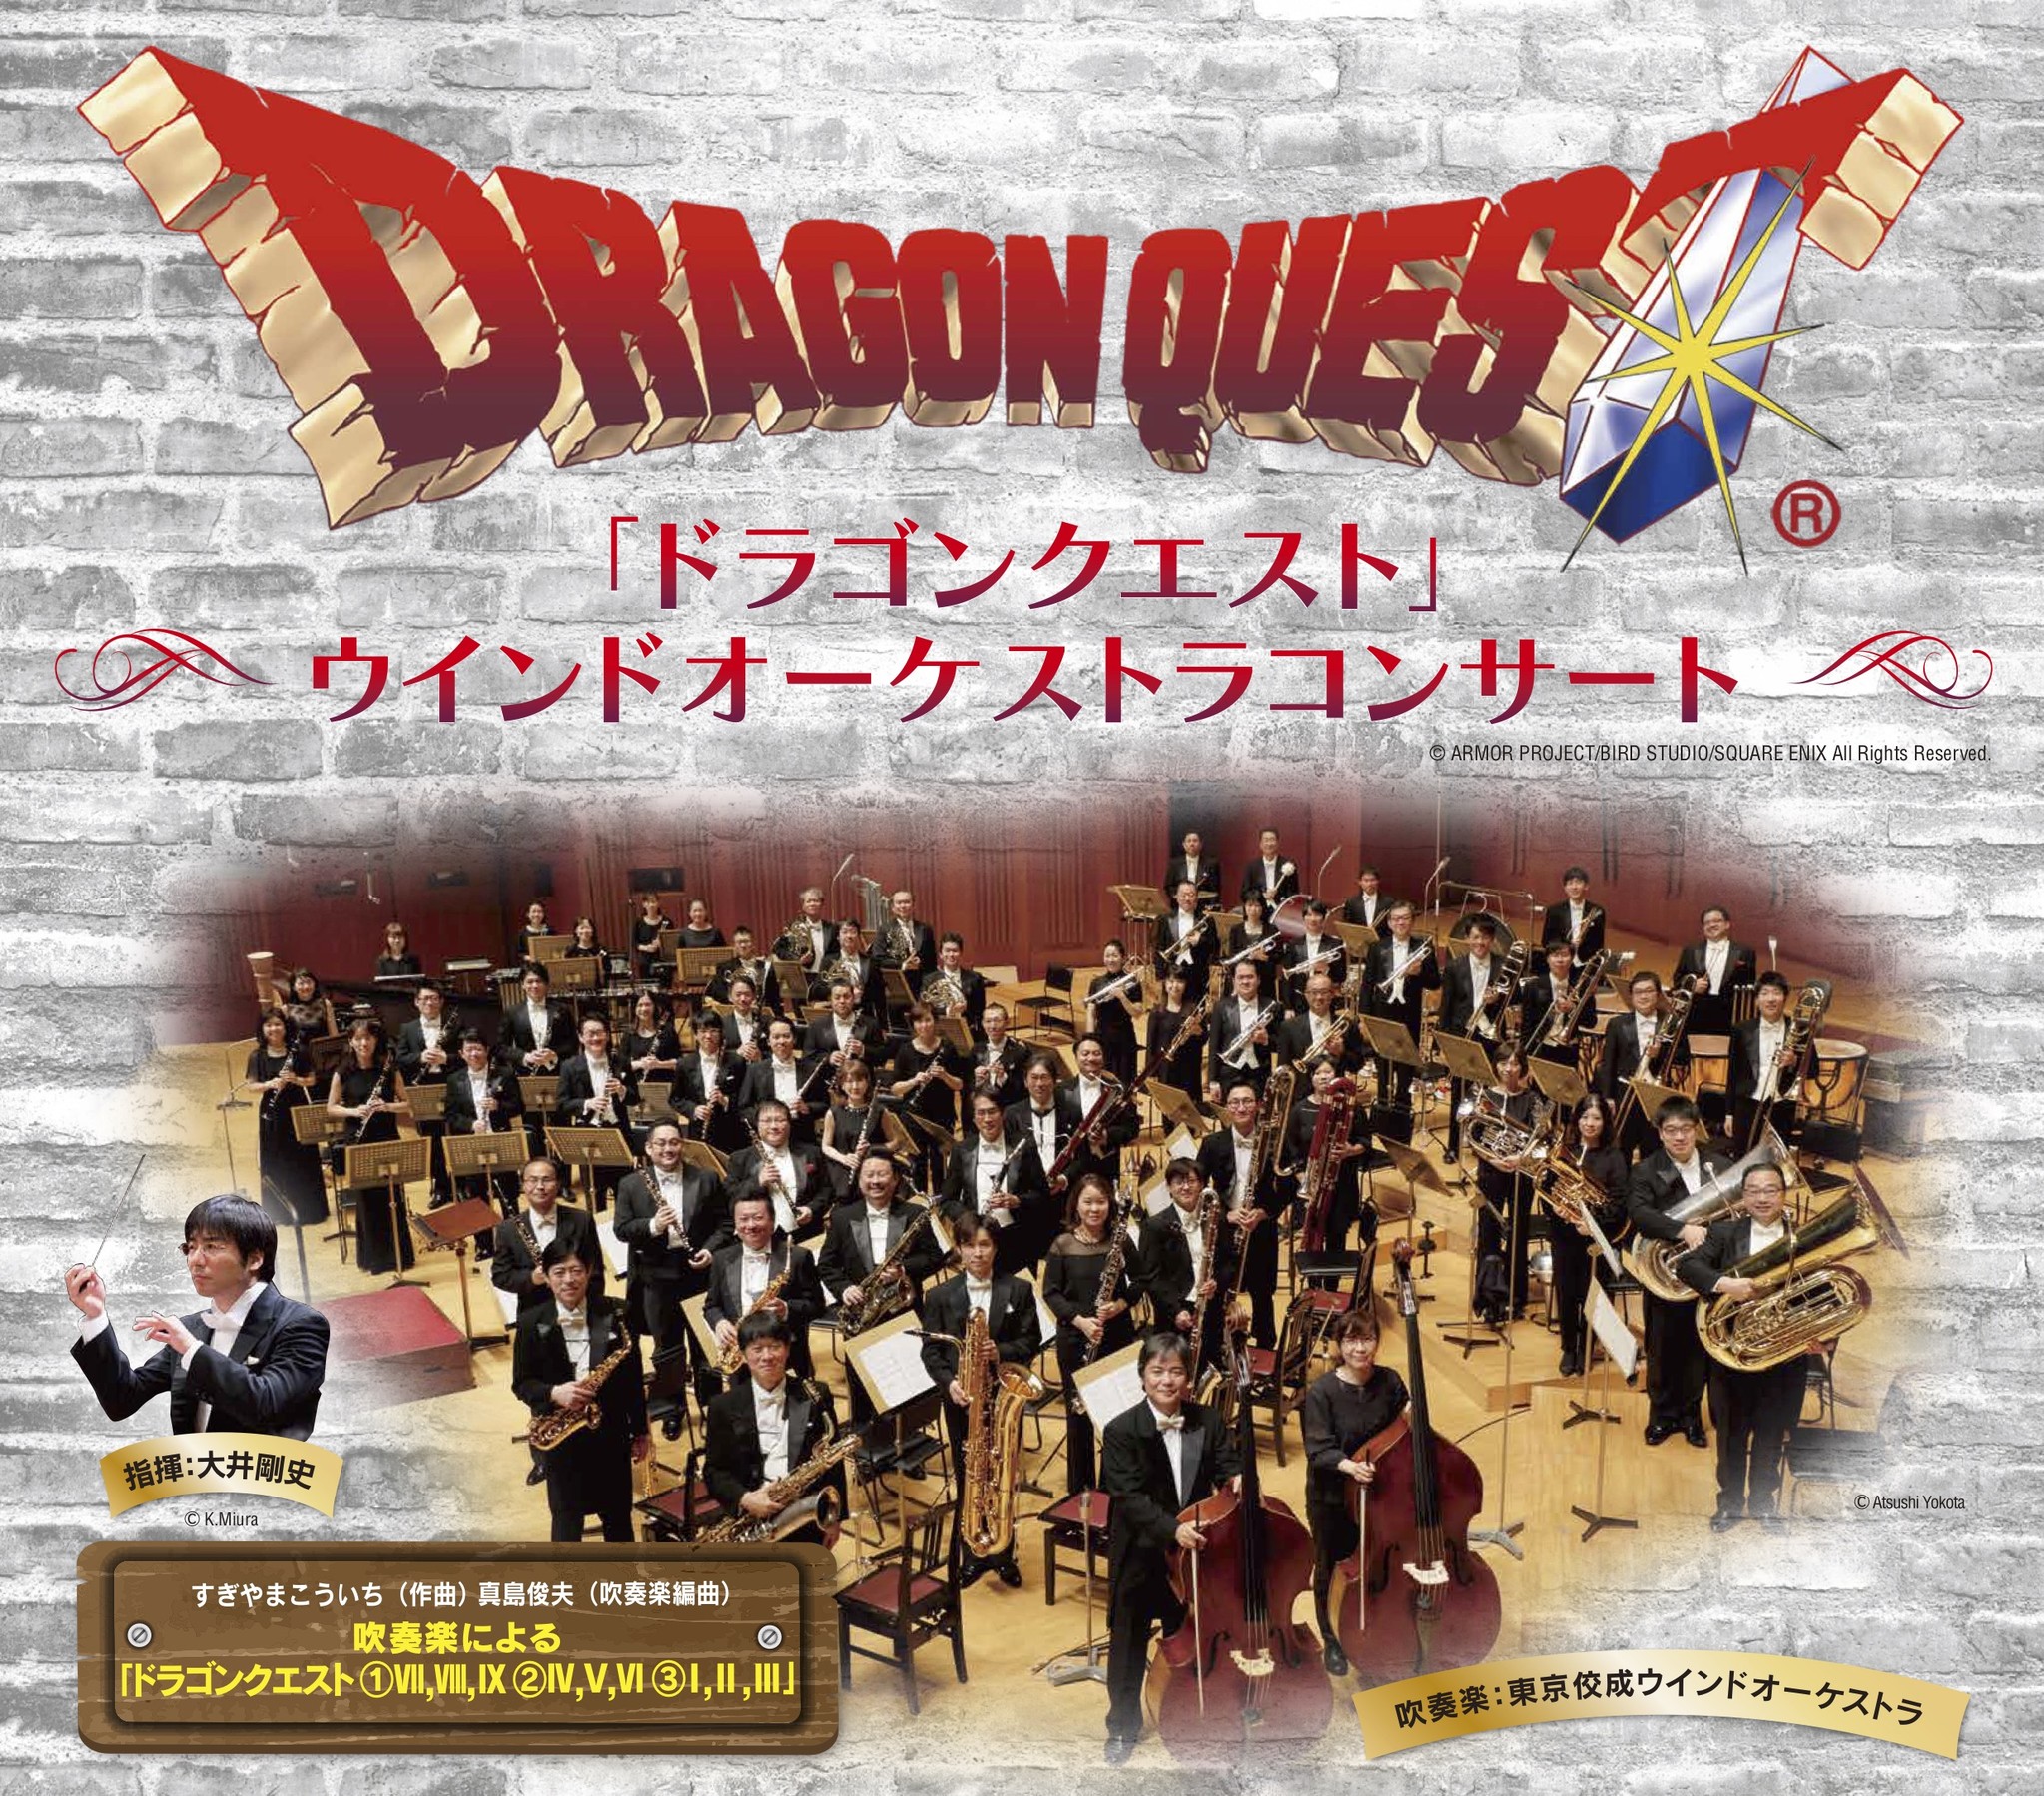 ドラゴンクエスト ウインドオーケストラコンサート 大晦日を含む年末公演の開催が今年も決定 株式会社 キョードー東京のプレスリリース